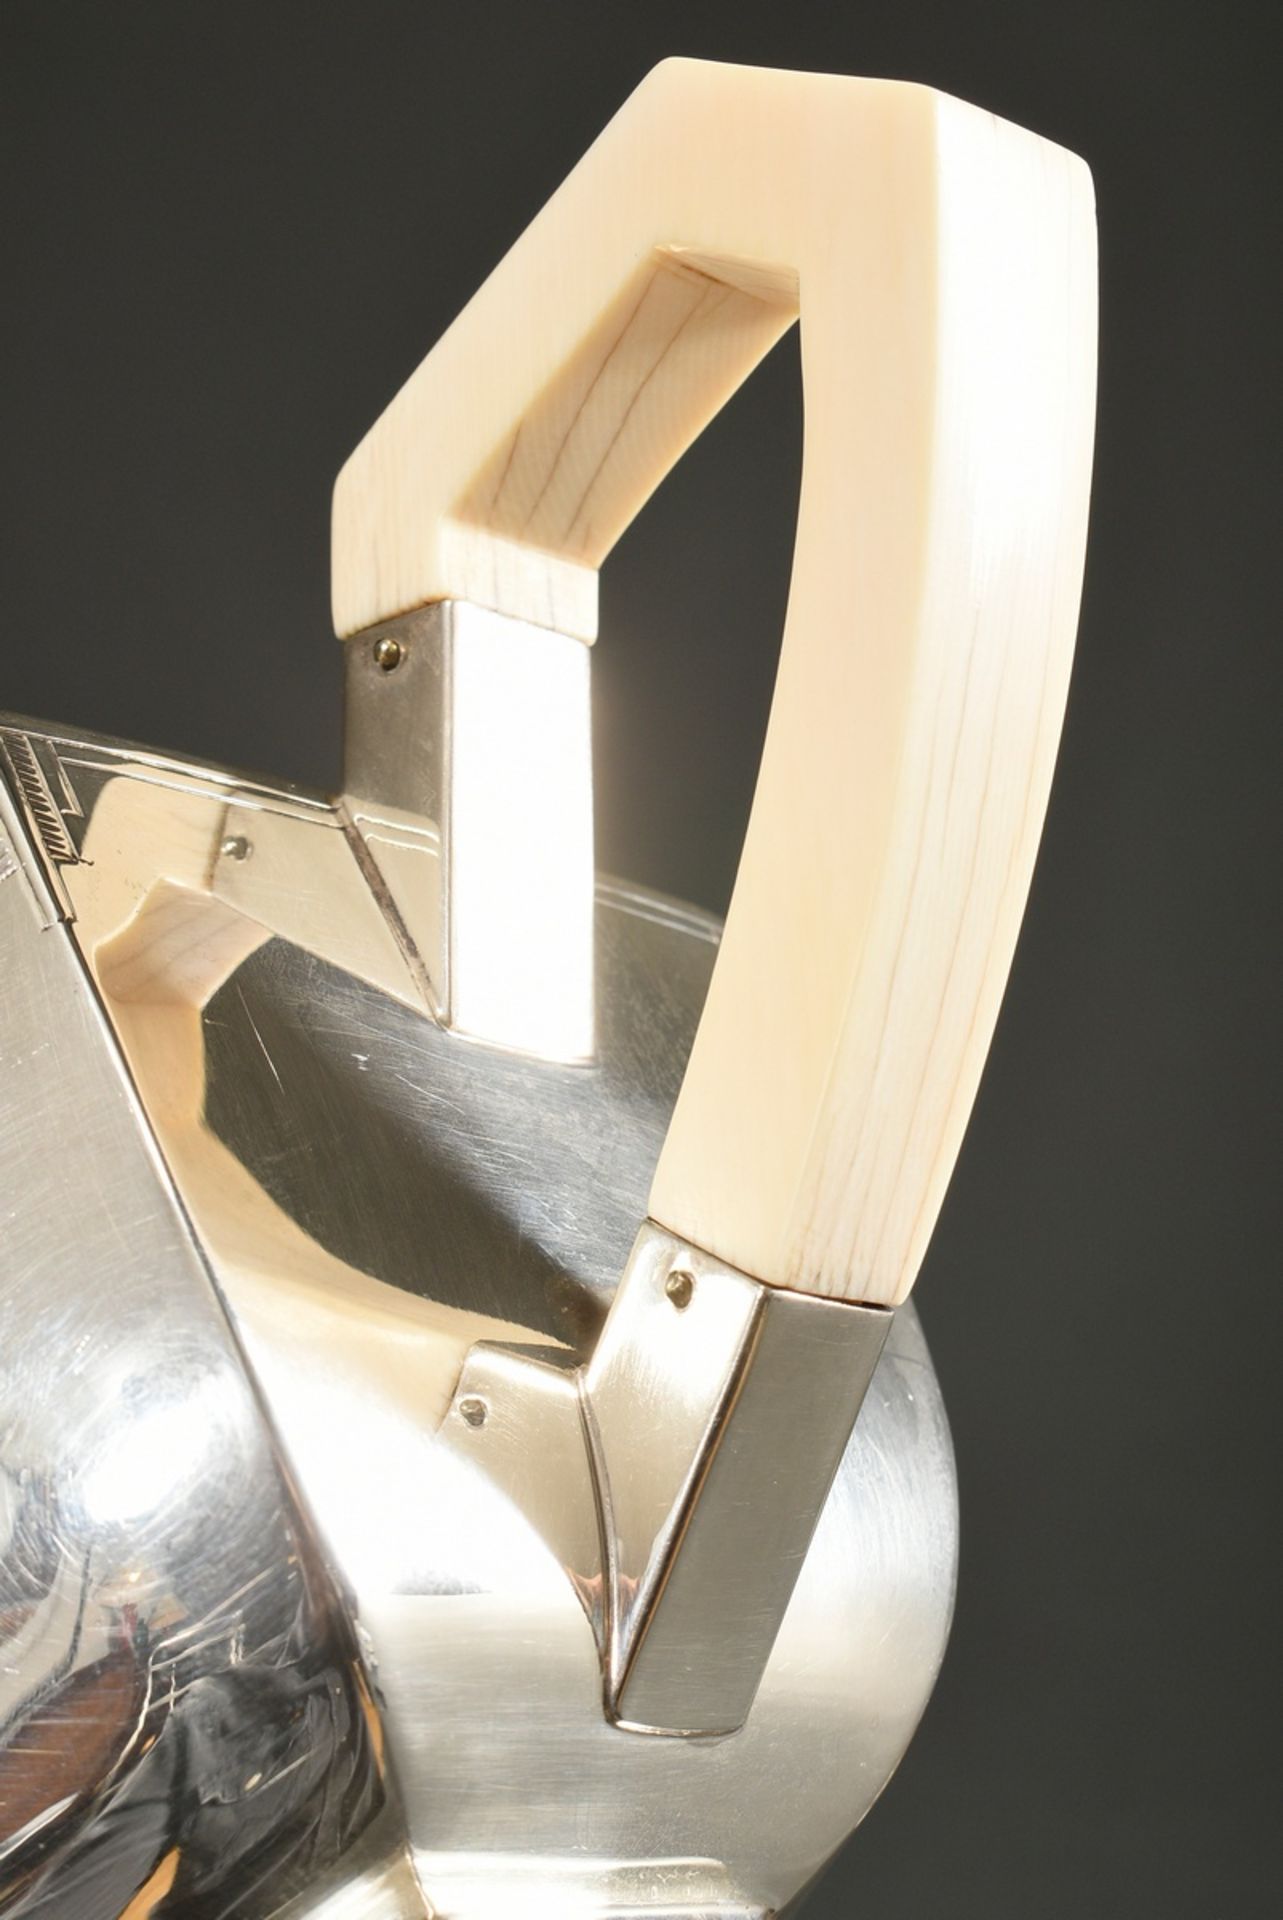 3 Teile Art Deco Teeset in geometrisch abstrahierter Form: Kanne mit Elfenbein Knauf und Handhabe s - Bild 7 aus 8